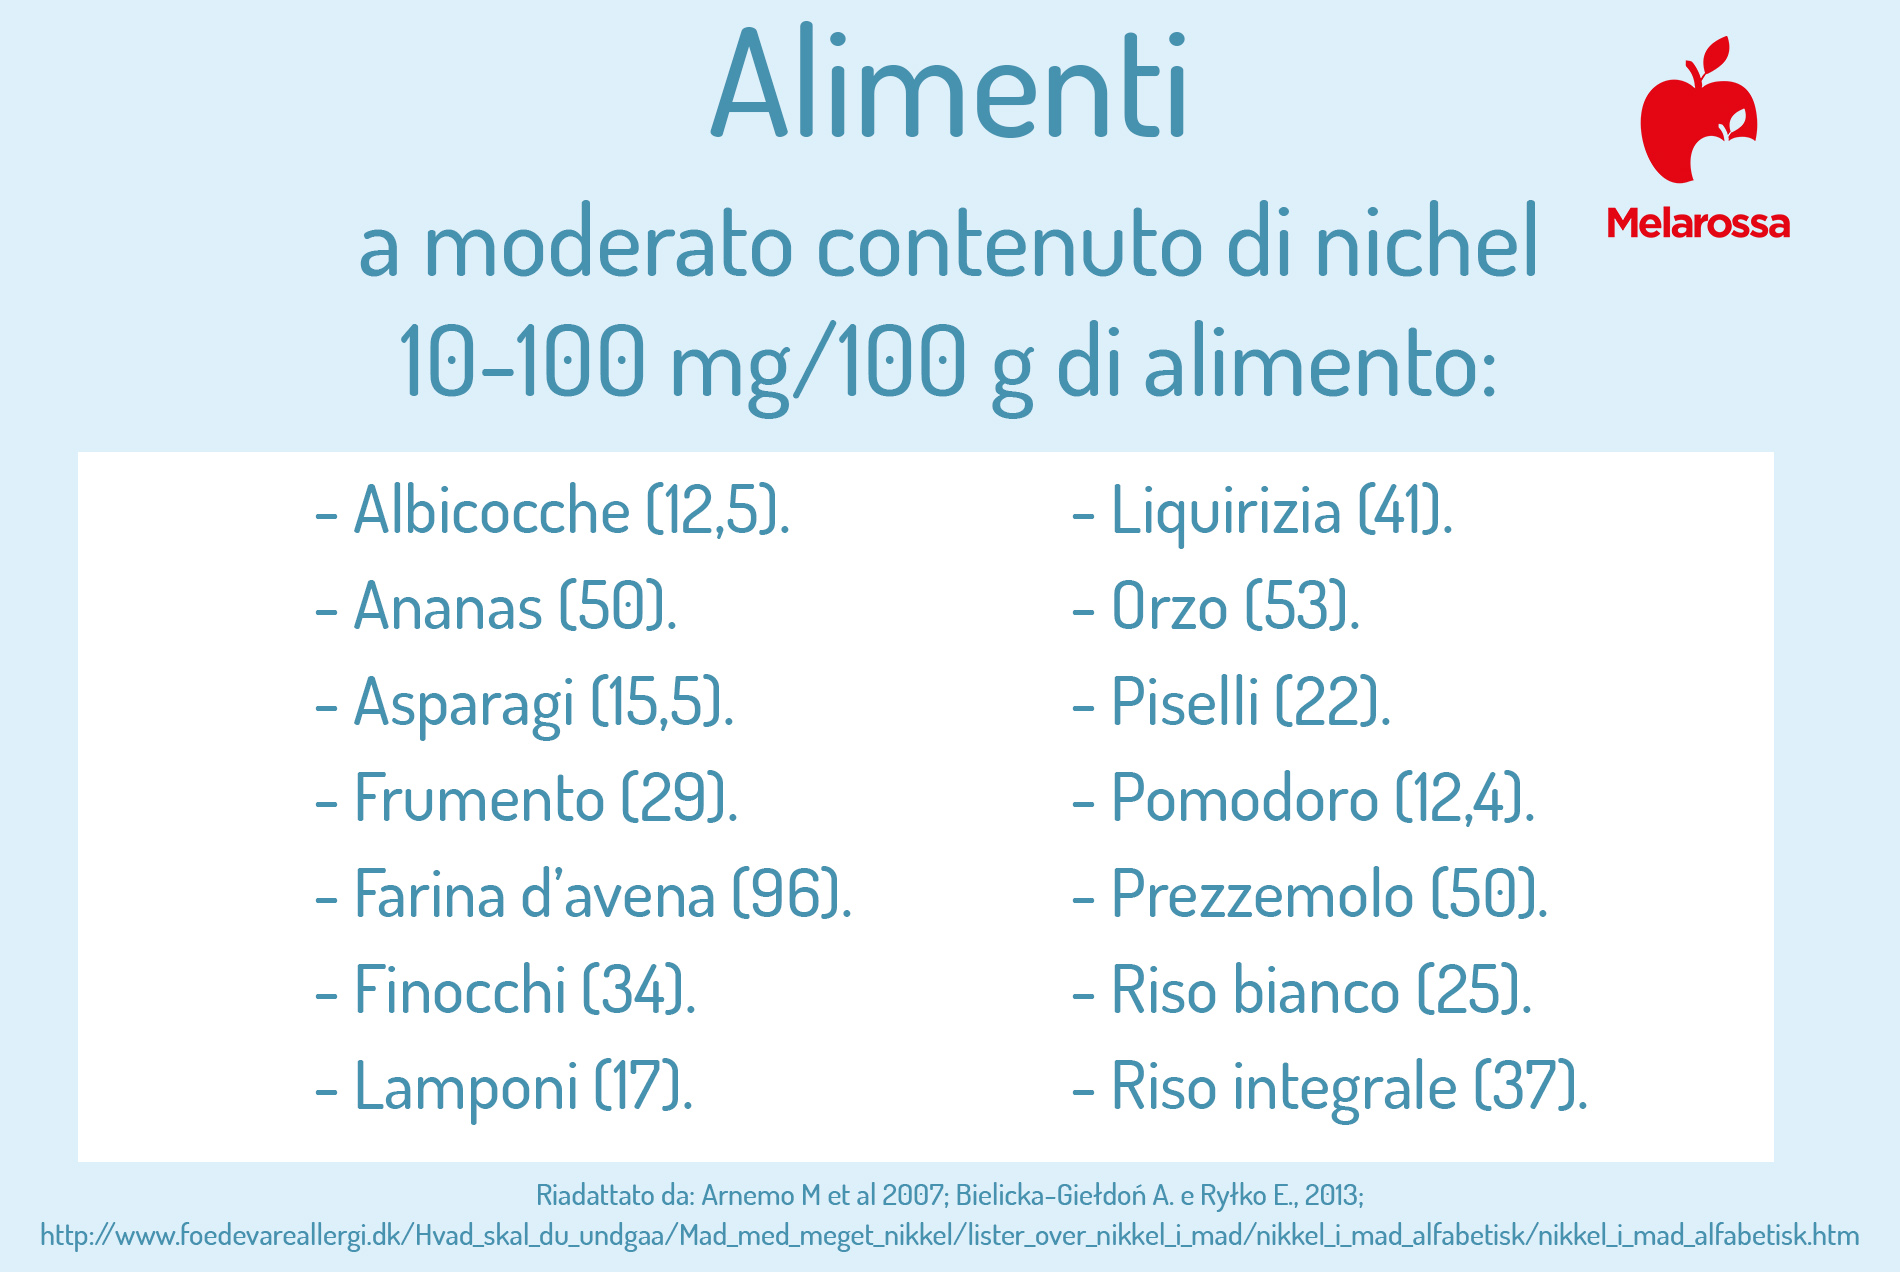 allergia al nichel: alimenti a contenuto moderato